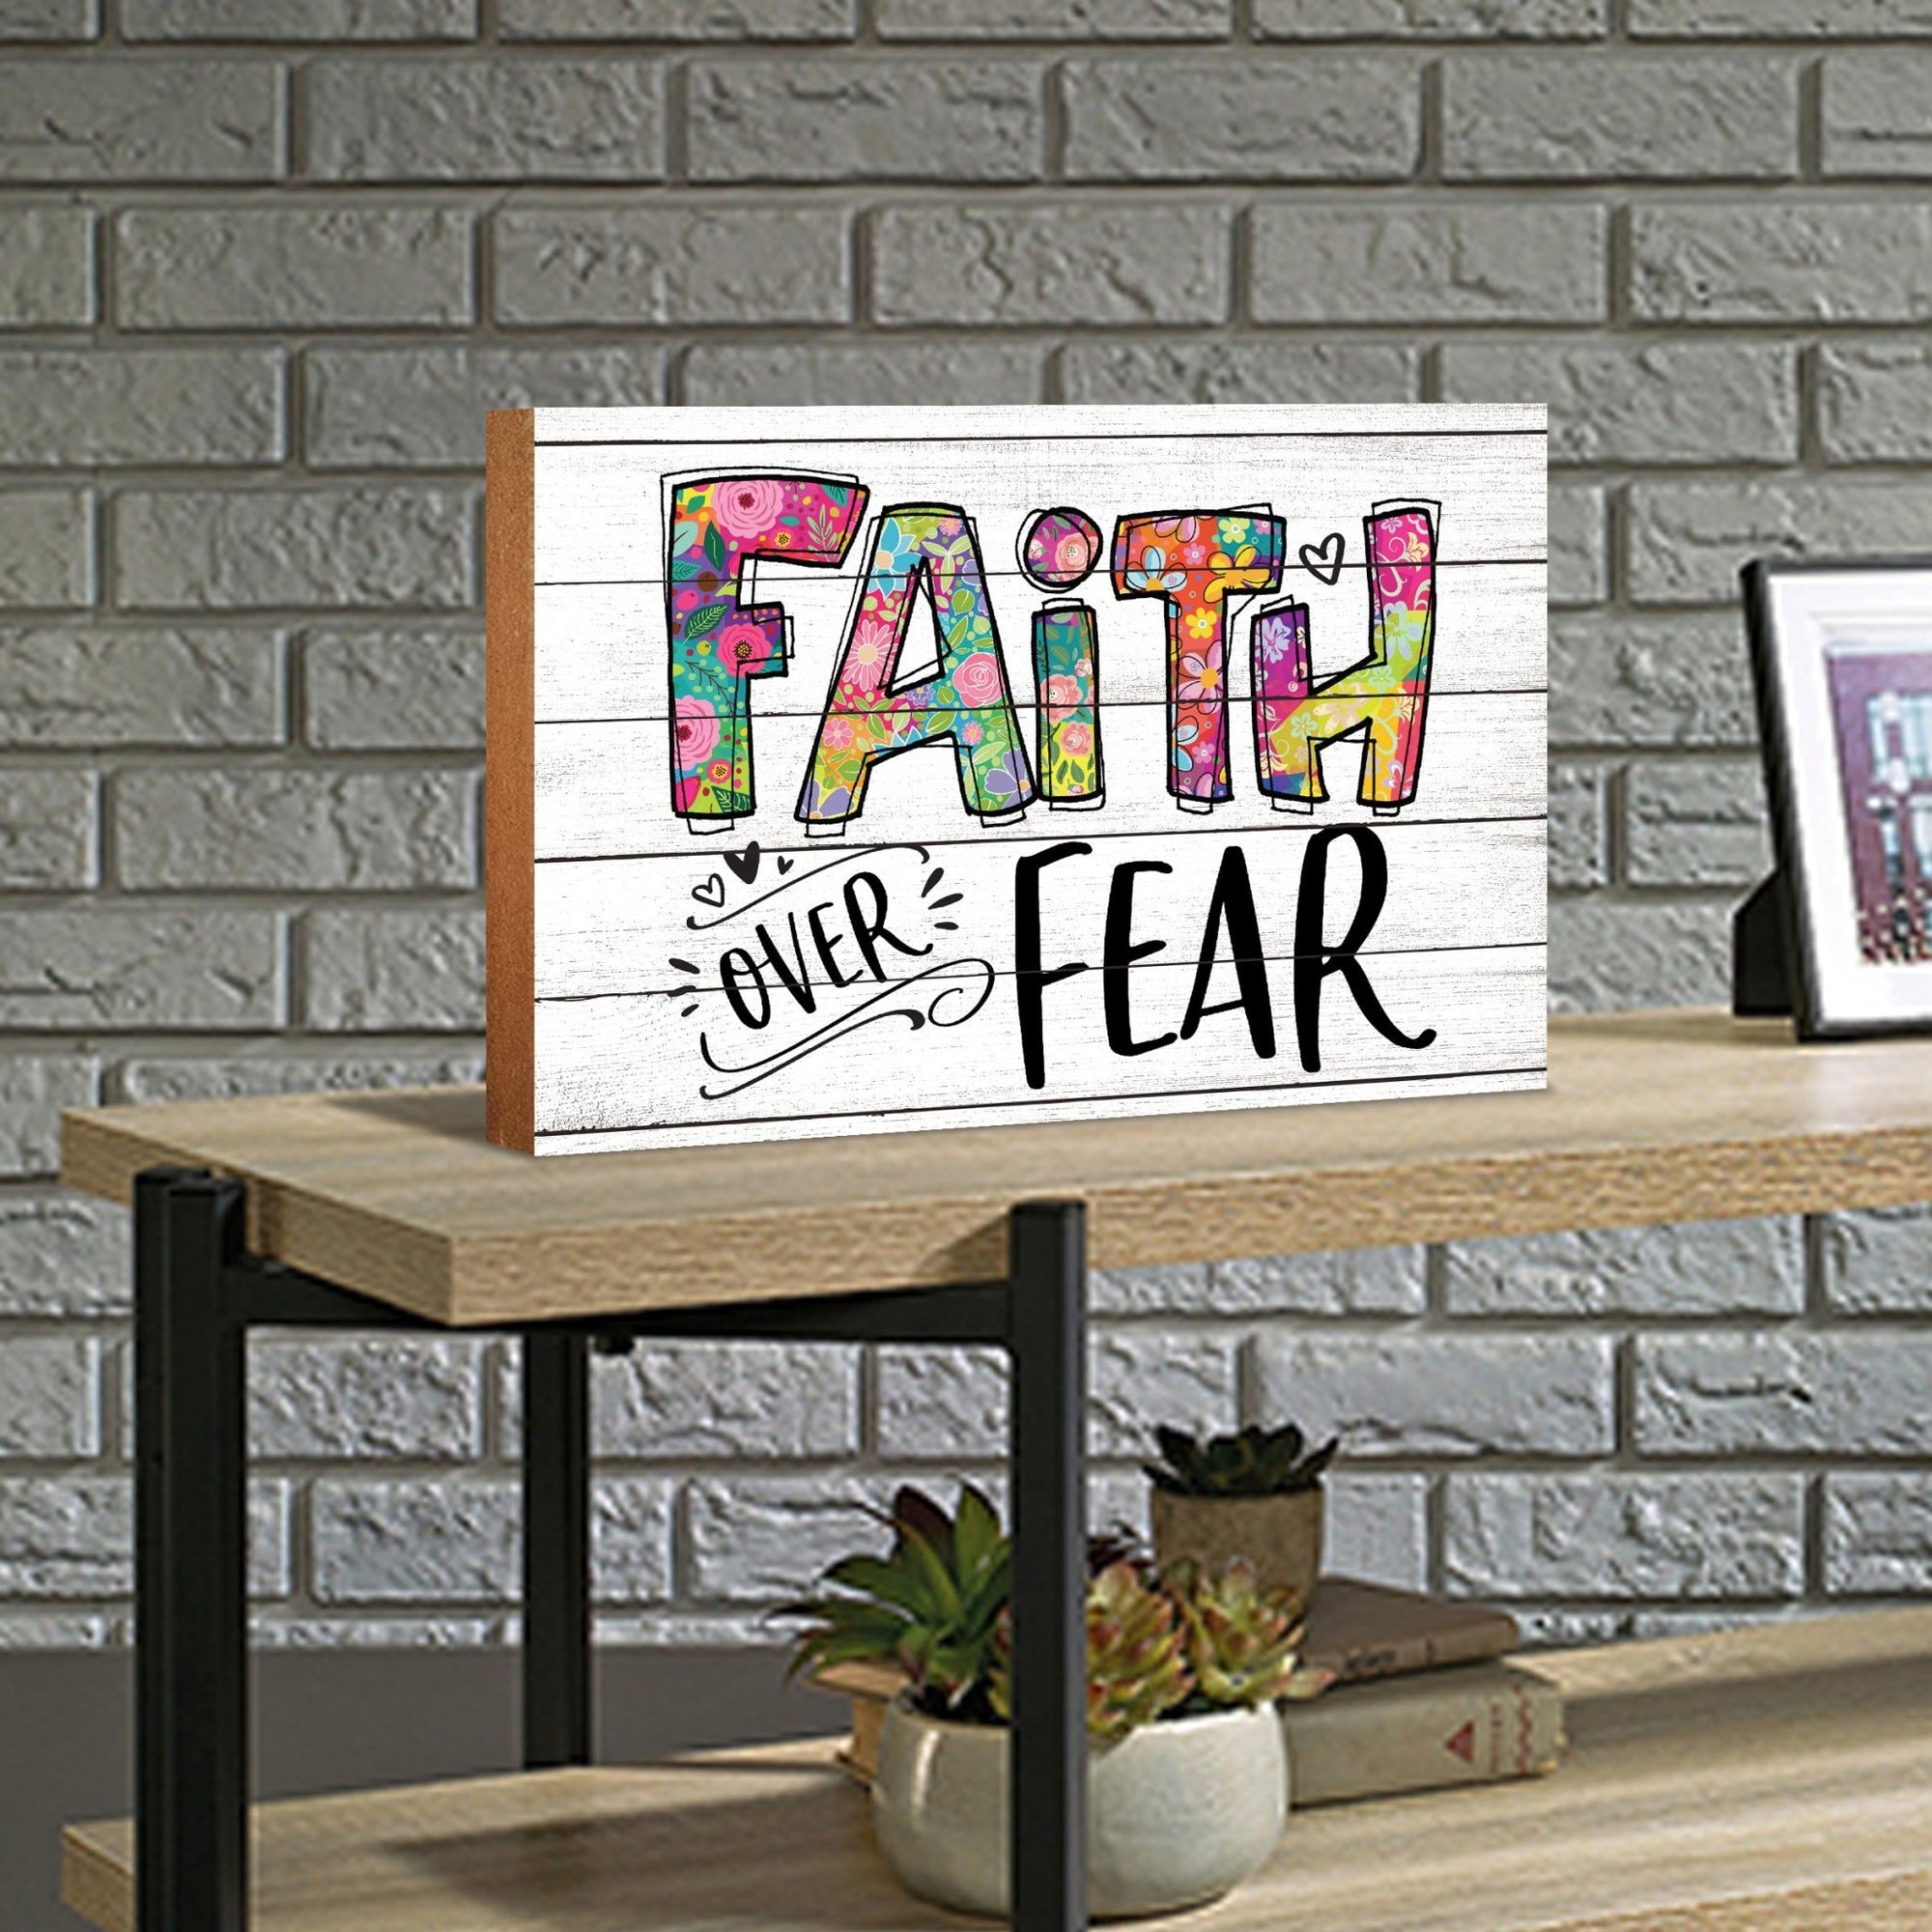 Modern-Inspired White Wooden Graffiti Art Shelf Sitter Gift Idea & Home Décor - Faith Over Fear - LifeSong Milestones